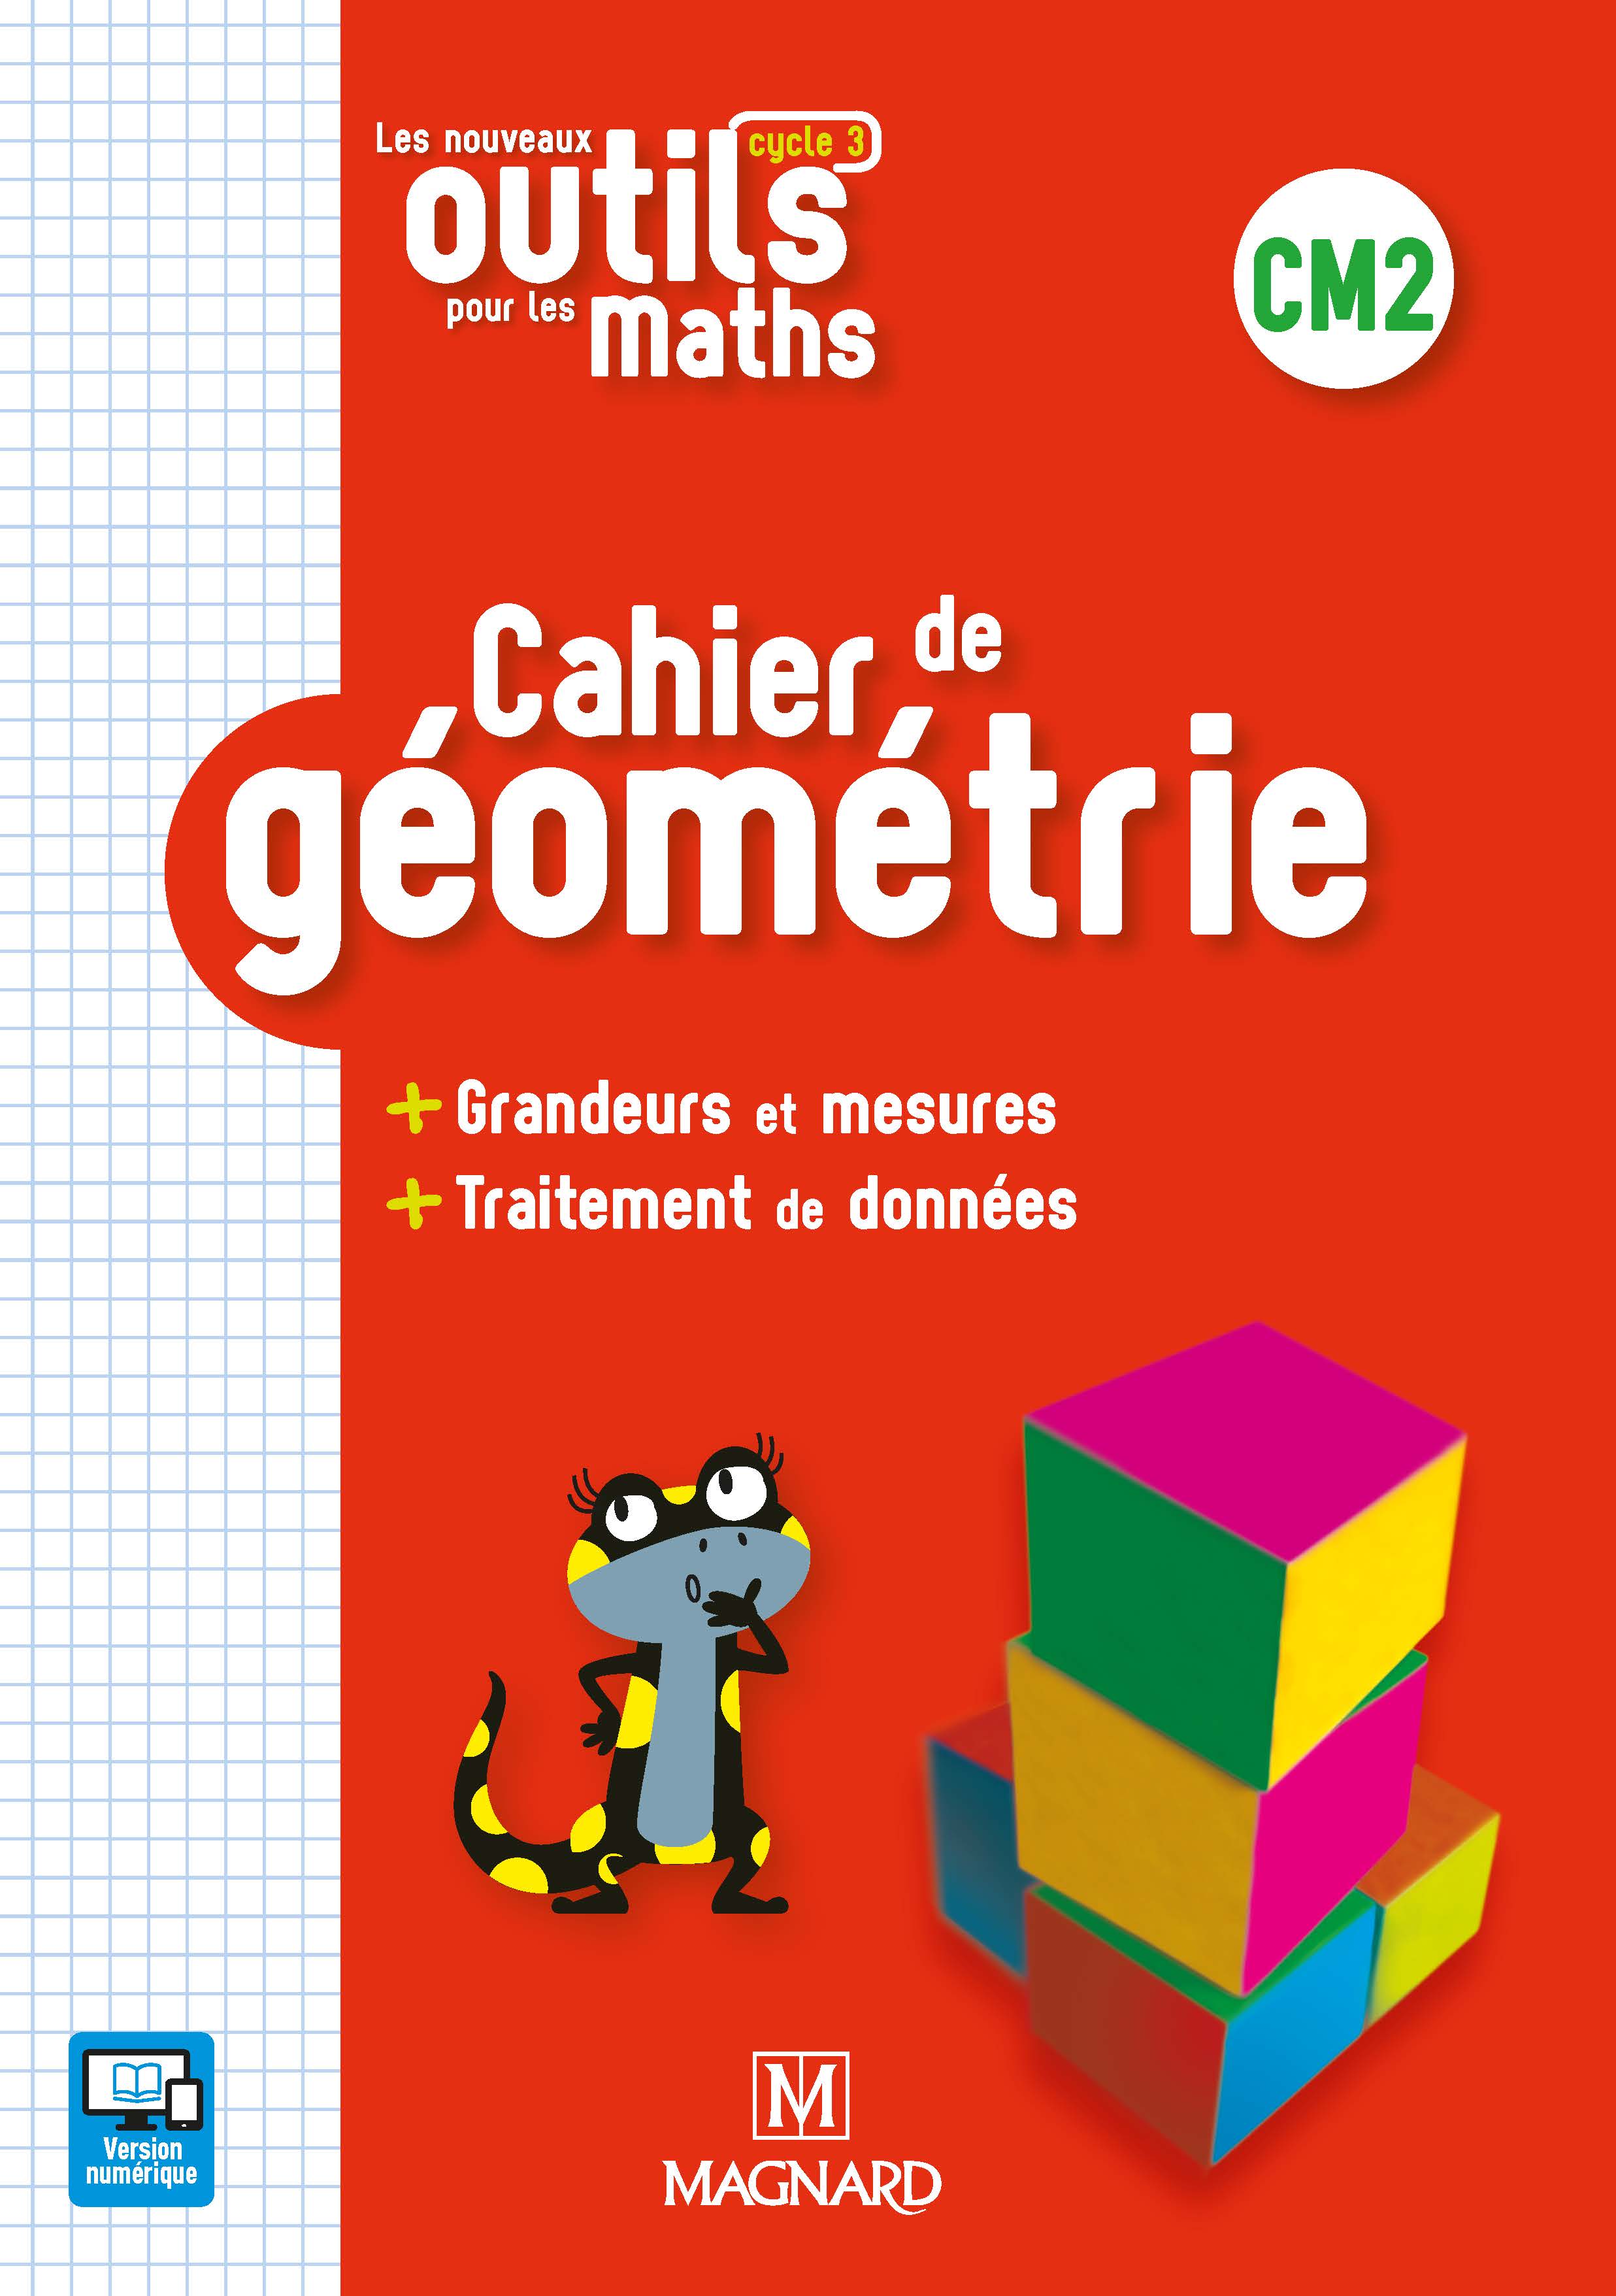 Outils Pour Les Maths Cm2 Corrigé 2020 Les Nouveaux Outils pour les Maths CM2 (2019) - Cahier de géométrie |  Magnard